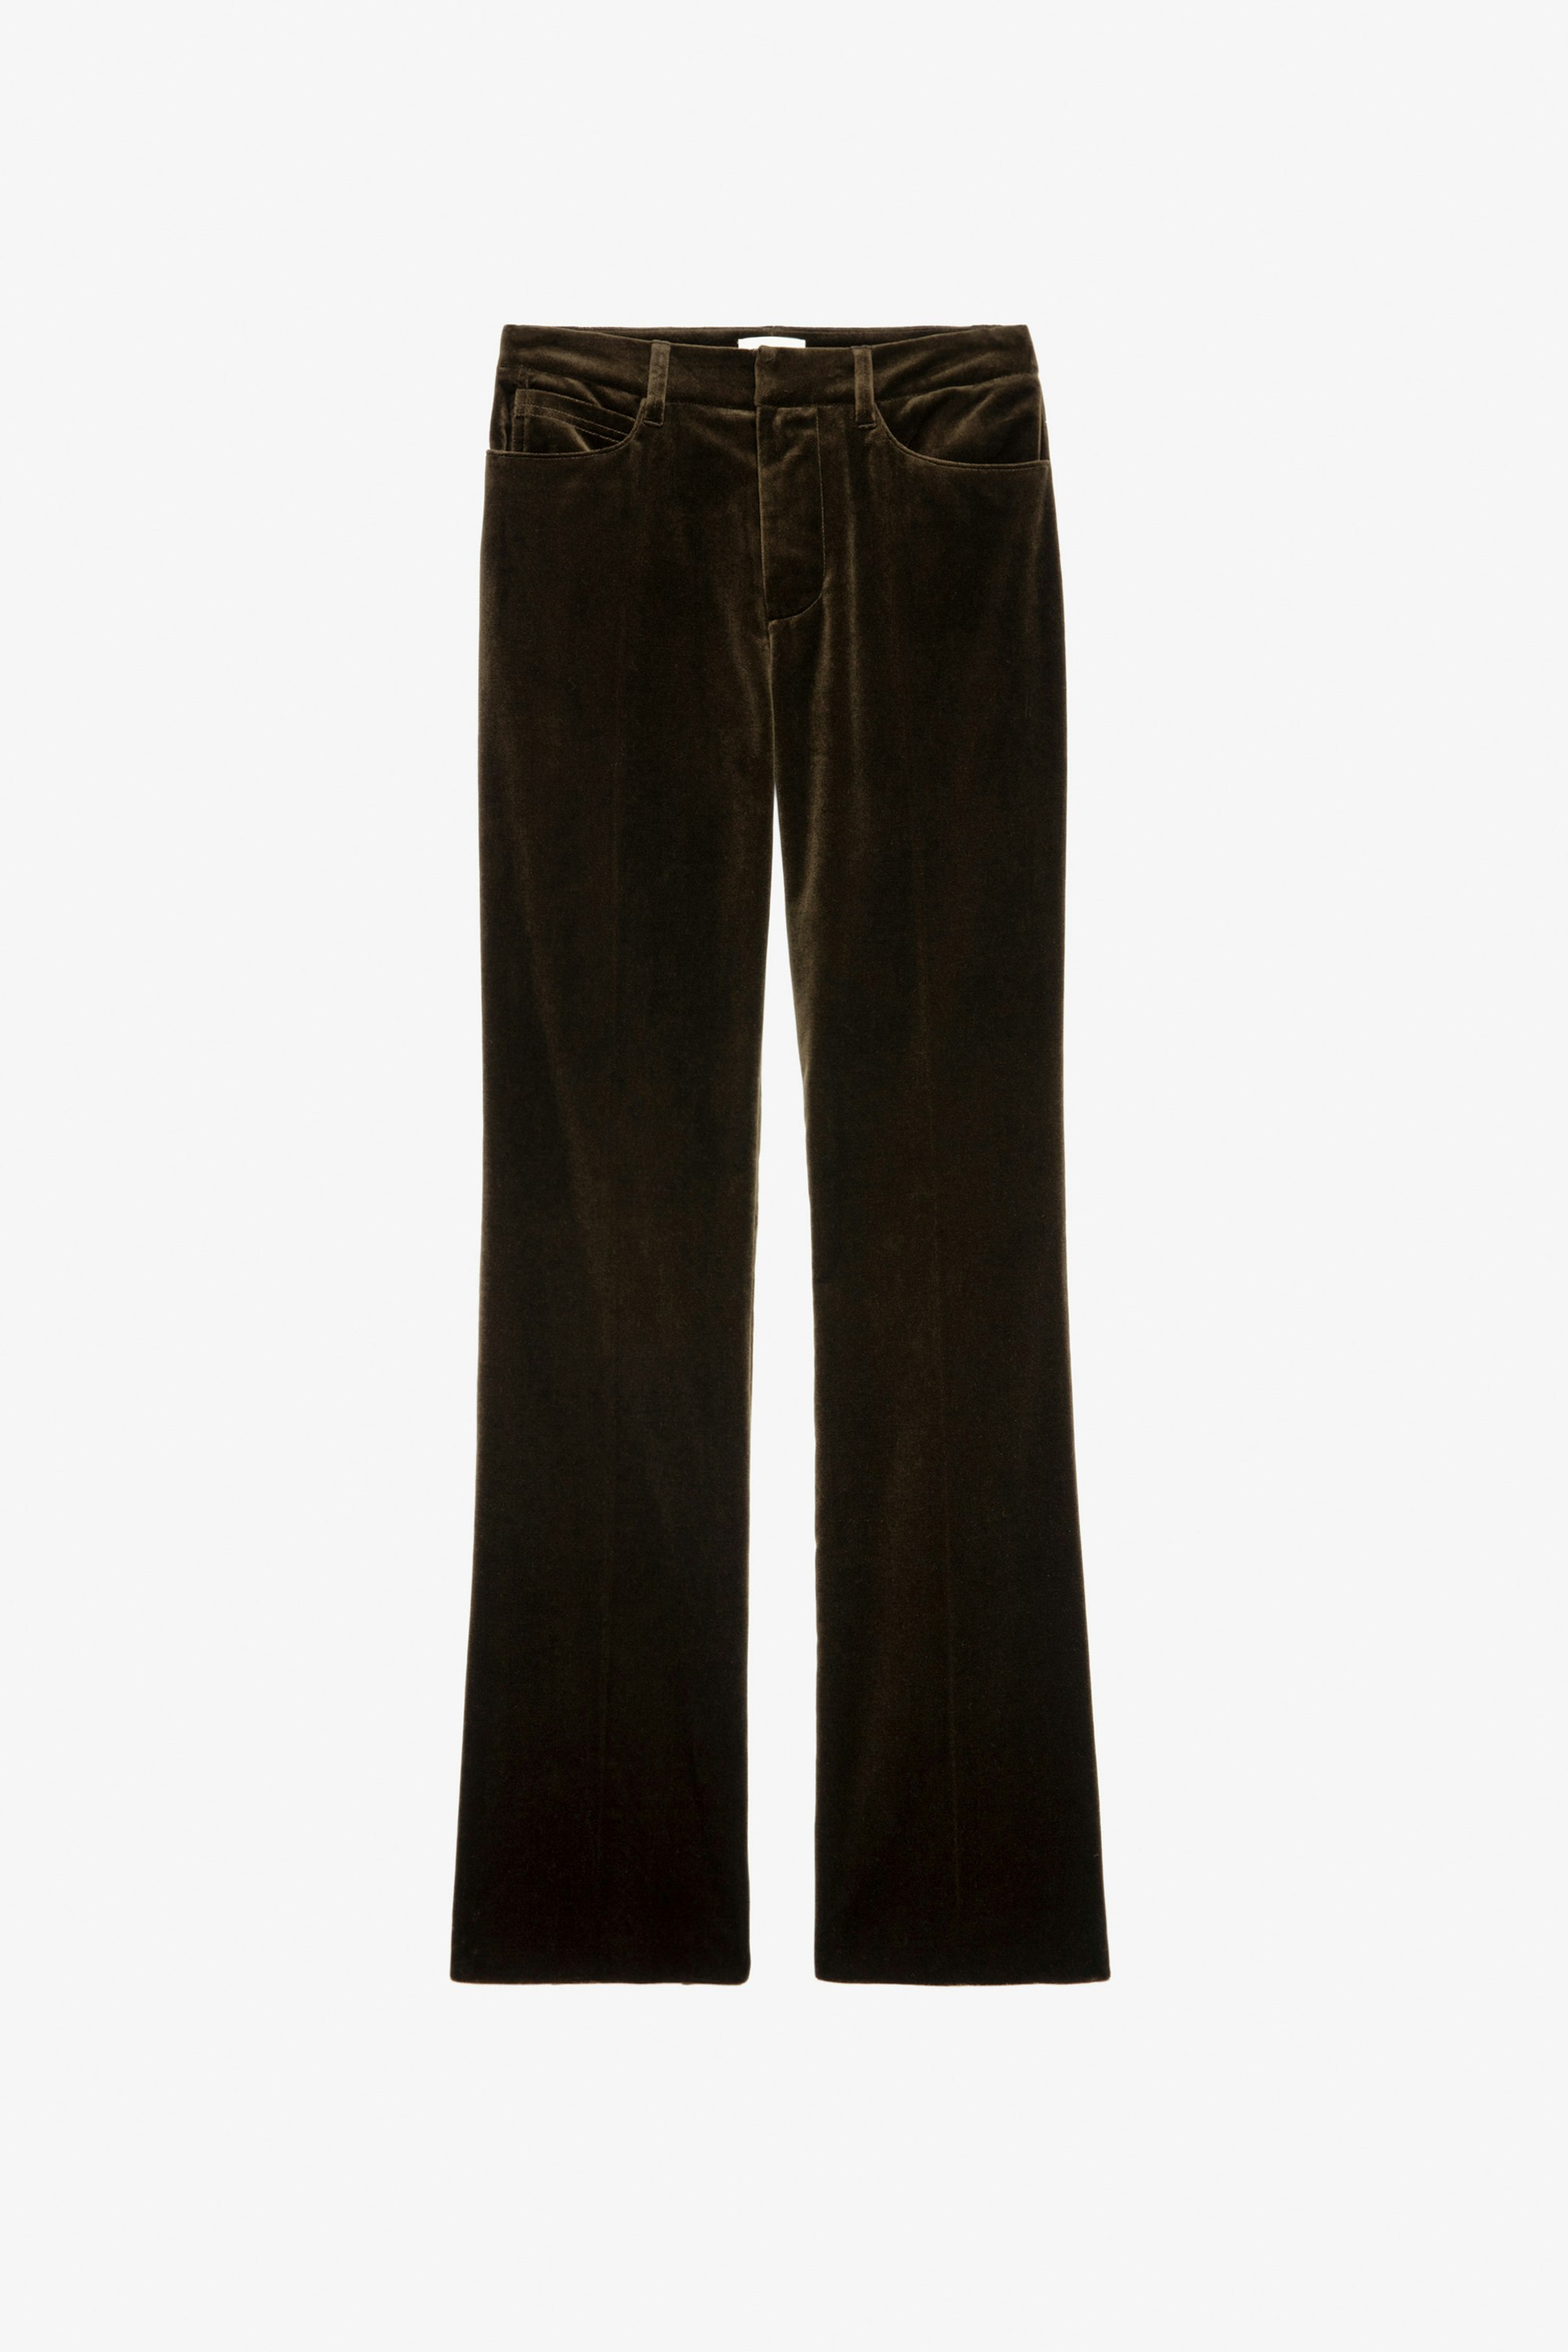 Pistol Velvet Trousers - Women’s khaki velvet tailored trousers.